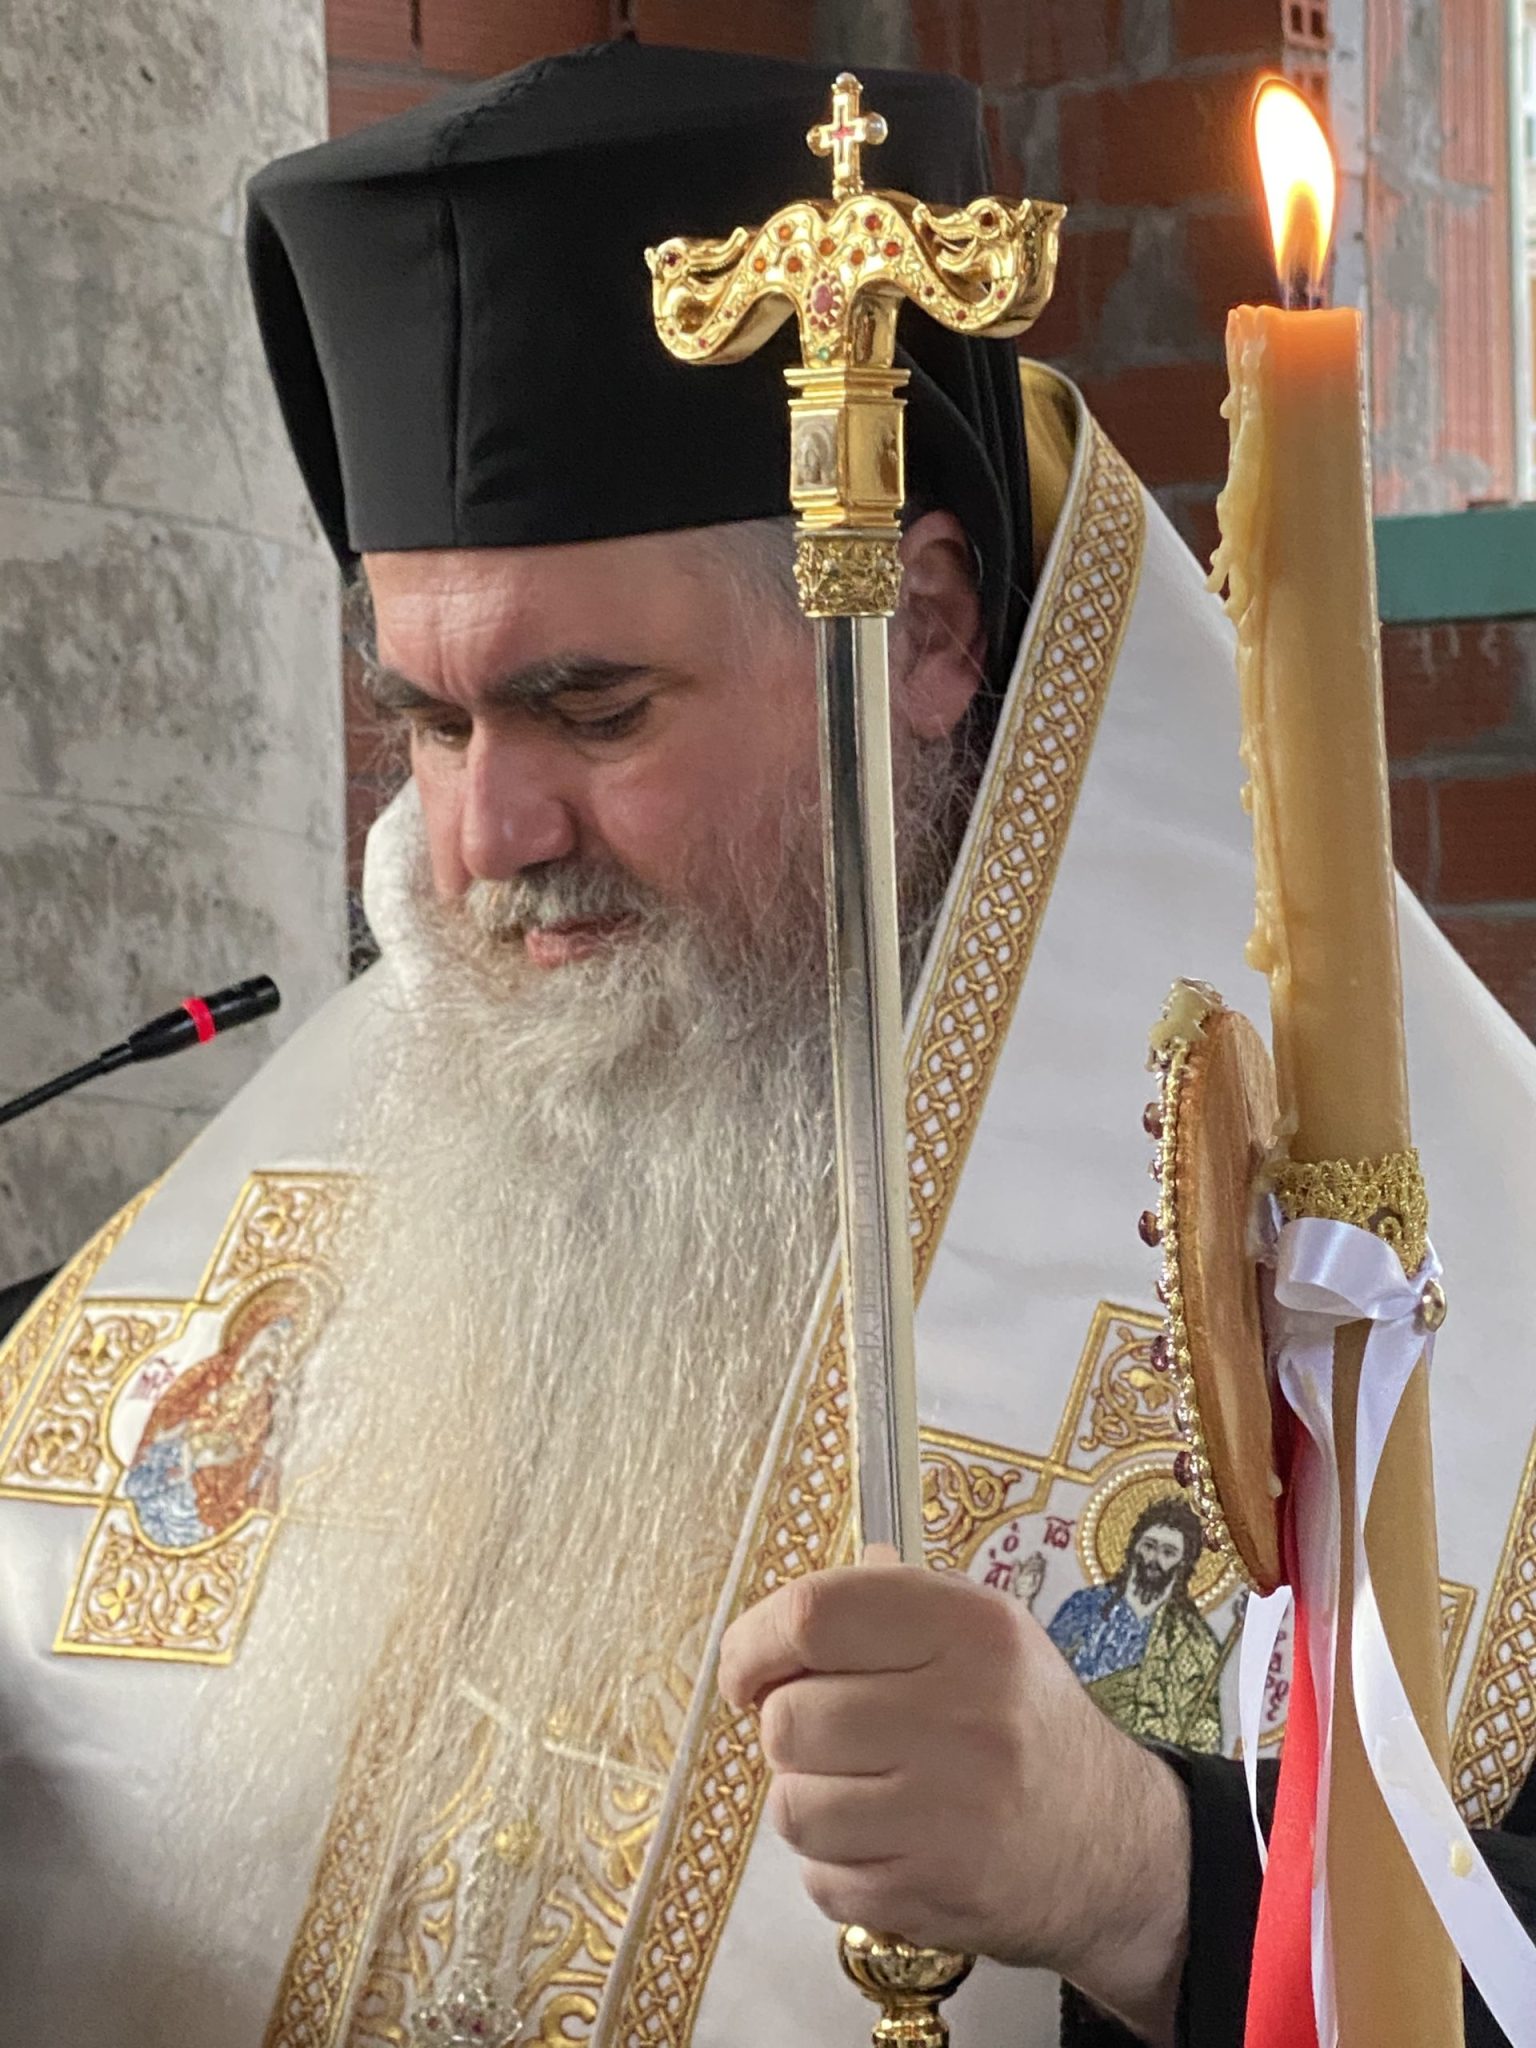 Ιουστίνος από την Επανομή: ” Τμήματα της κάρας του Αγίου Αργυρίου, έρχονται μόνιμα στην εκκλησία και στο μοναστήρι της Αγίας Αικατερίνης”